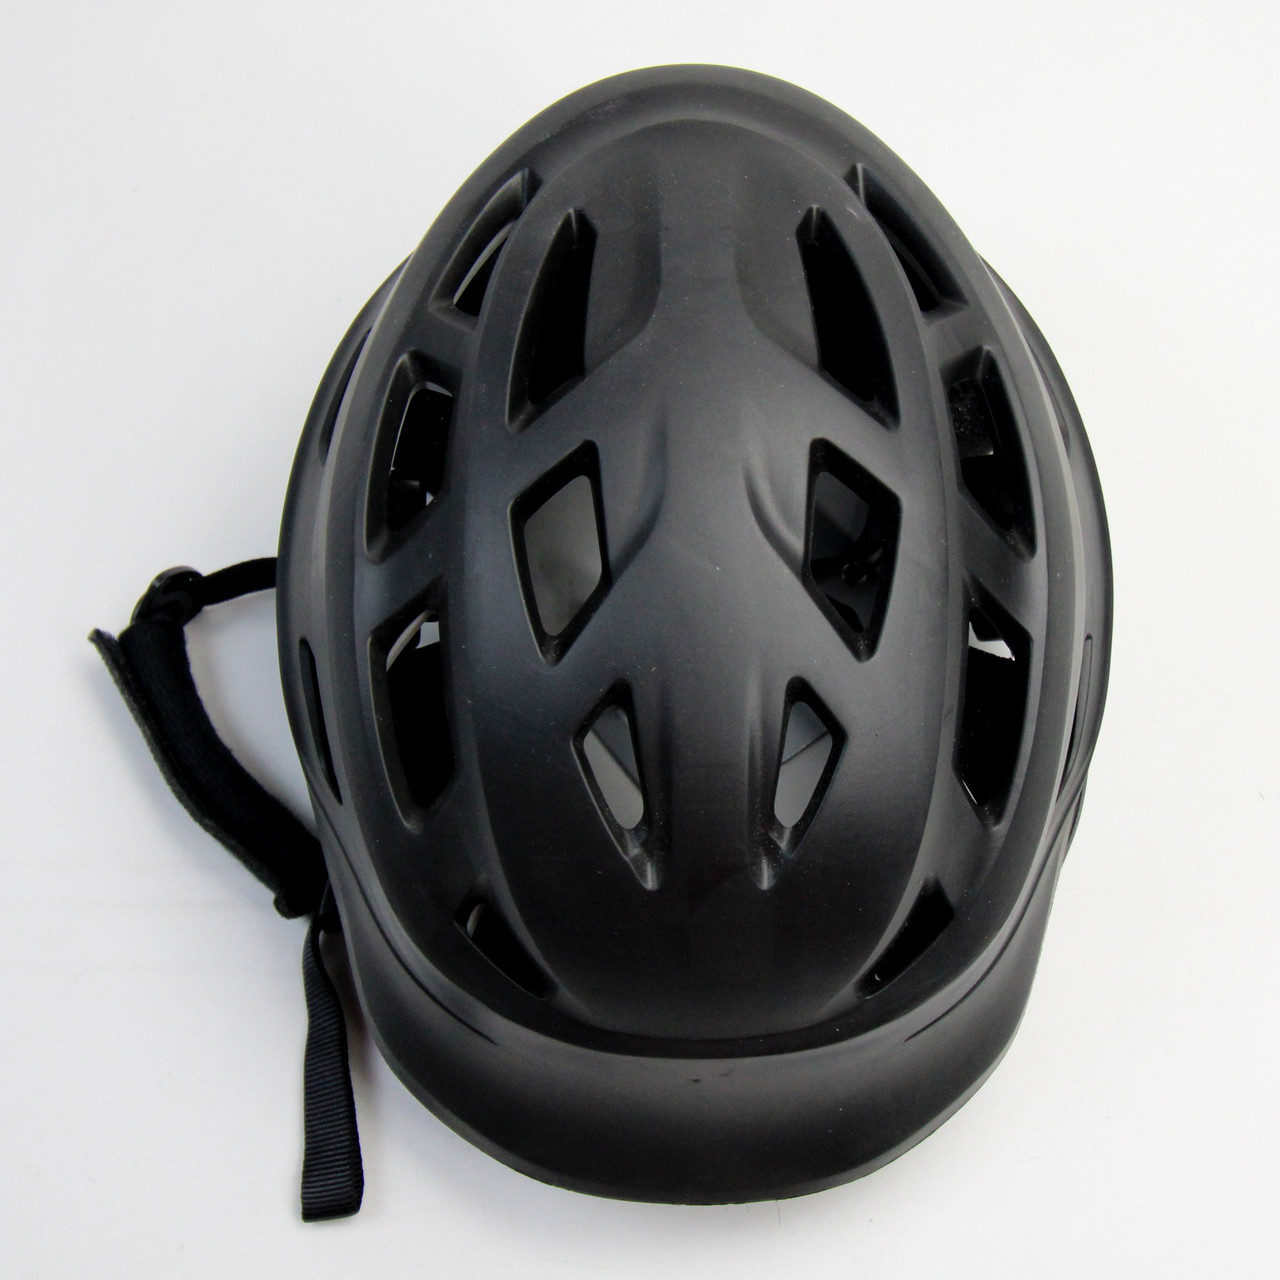 Helmet - Other